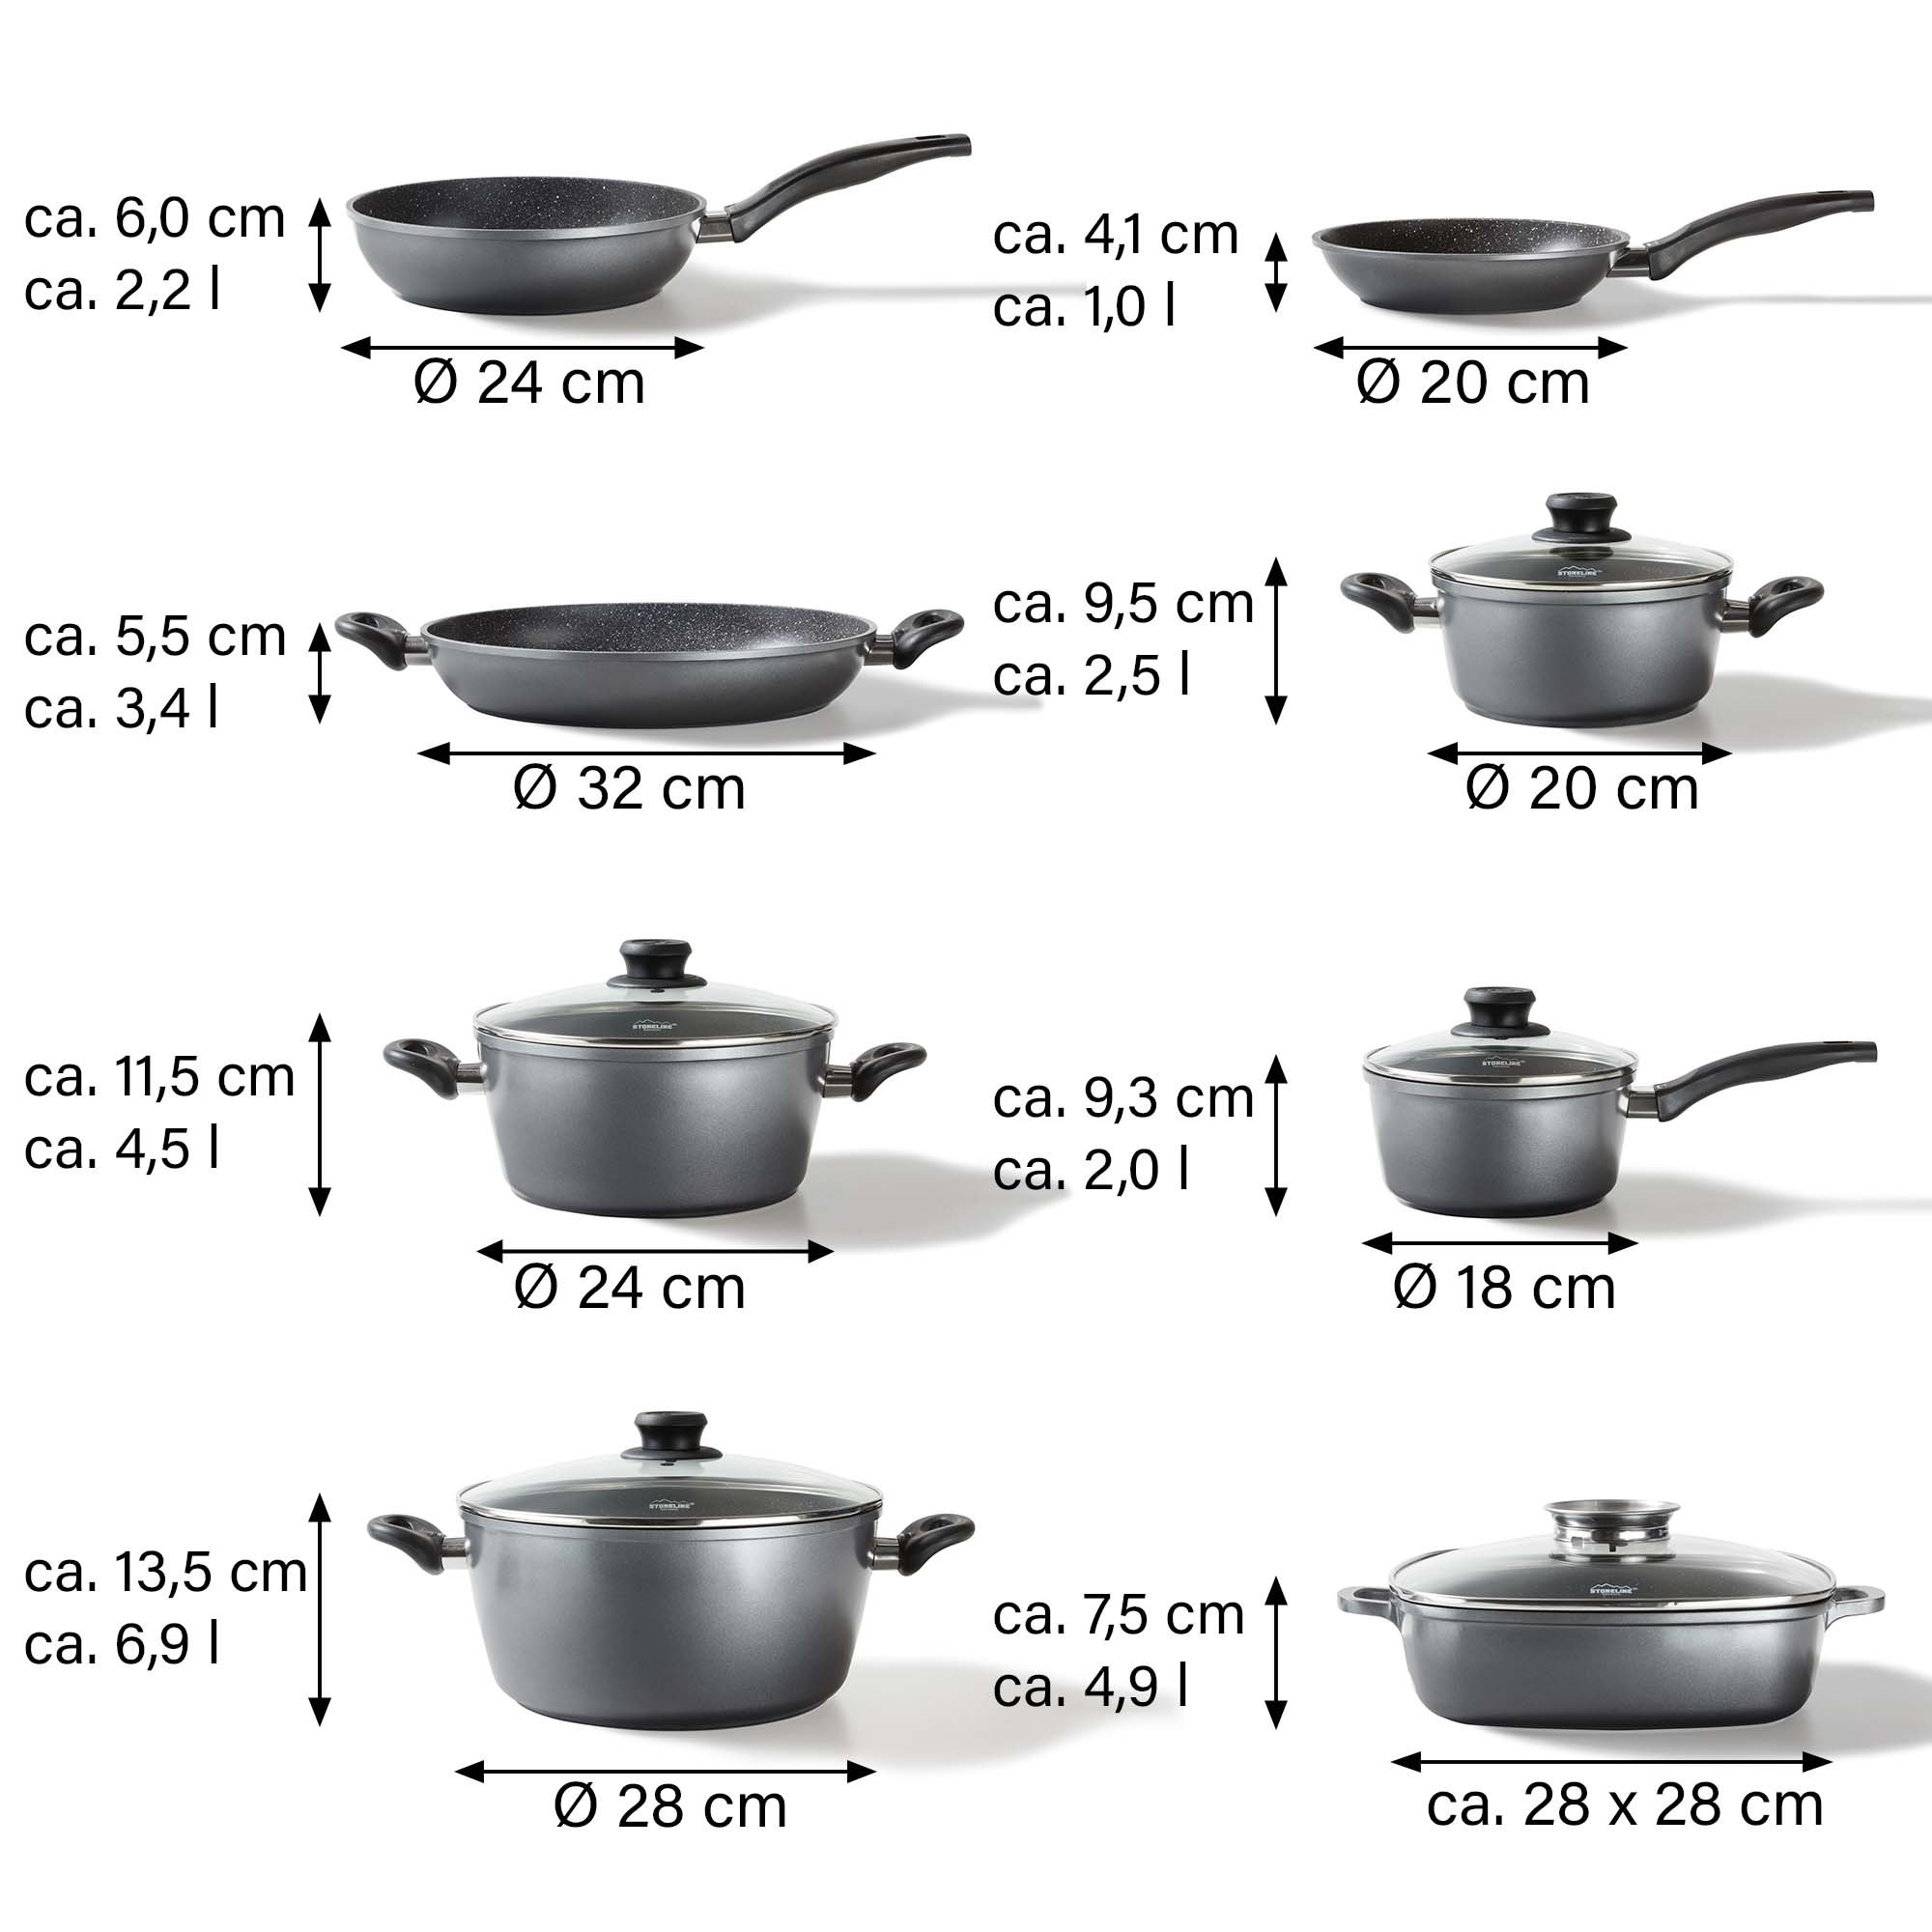 STONELINE® 13 pc Cookware Set, with Lids, Non-Stick Pots & Pans | CLASSIC